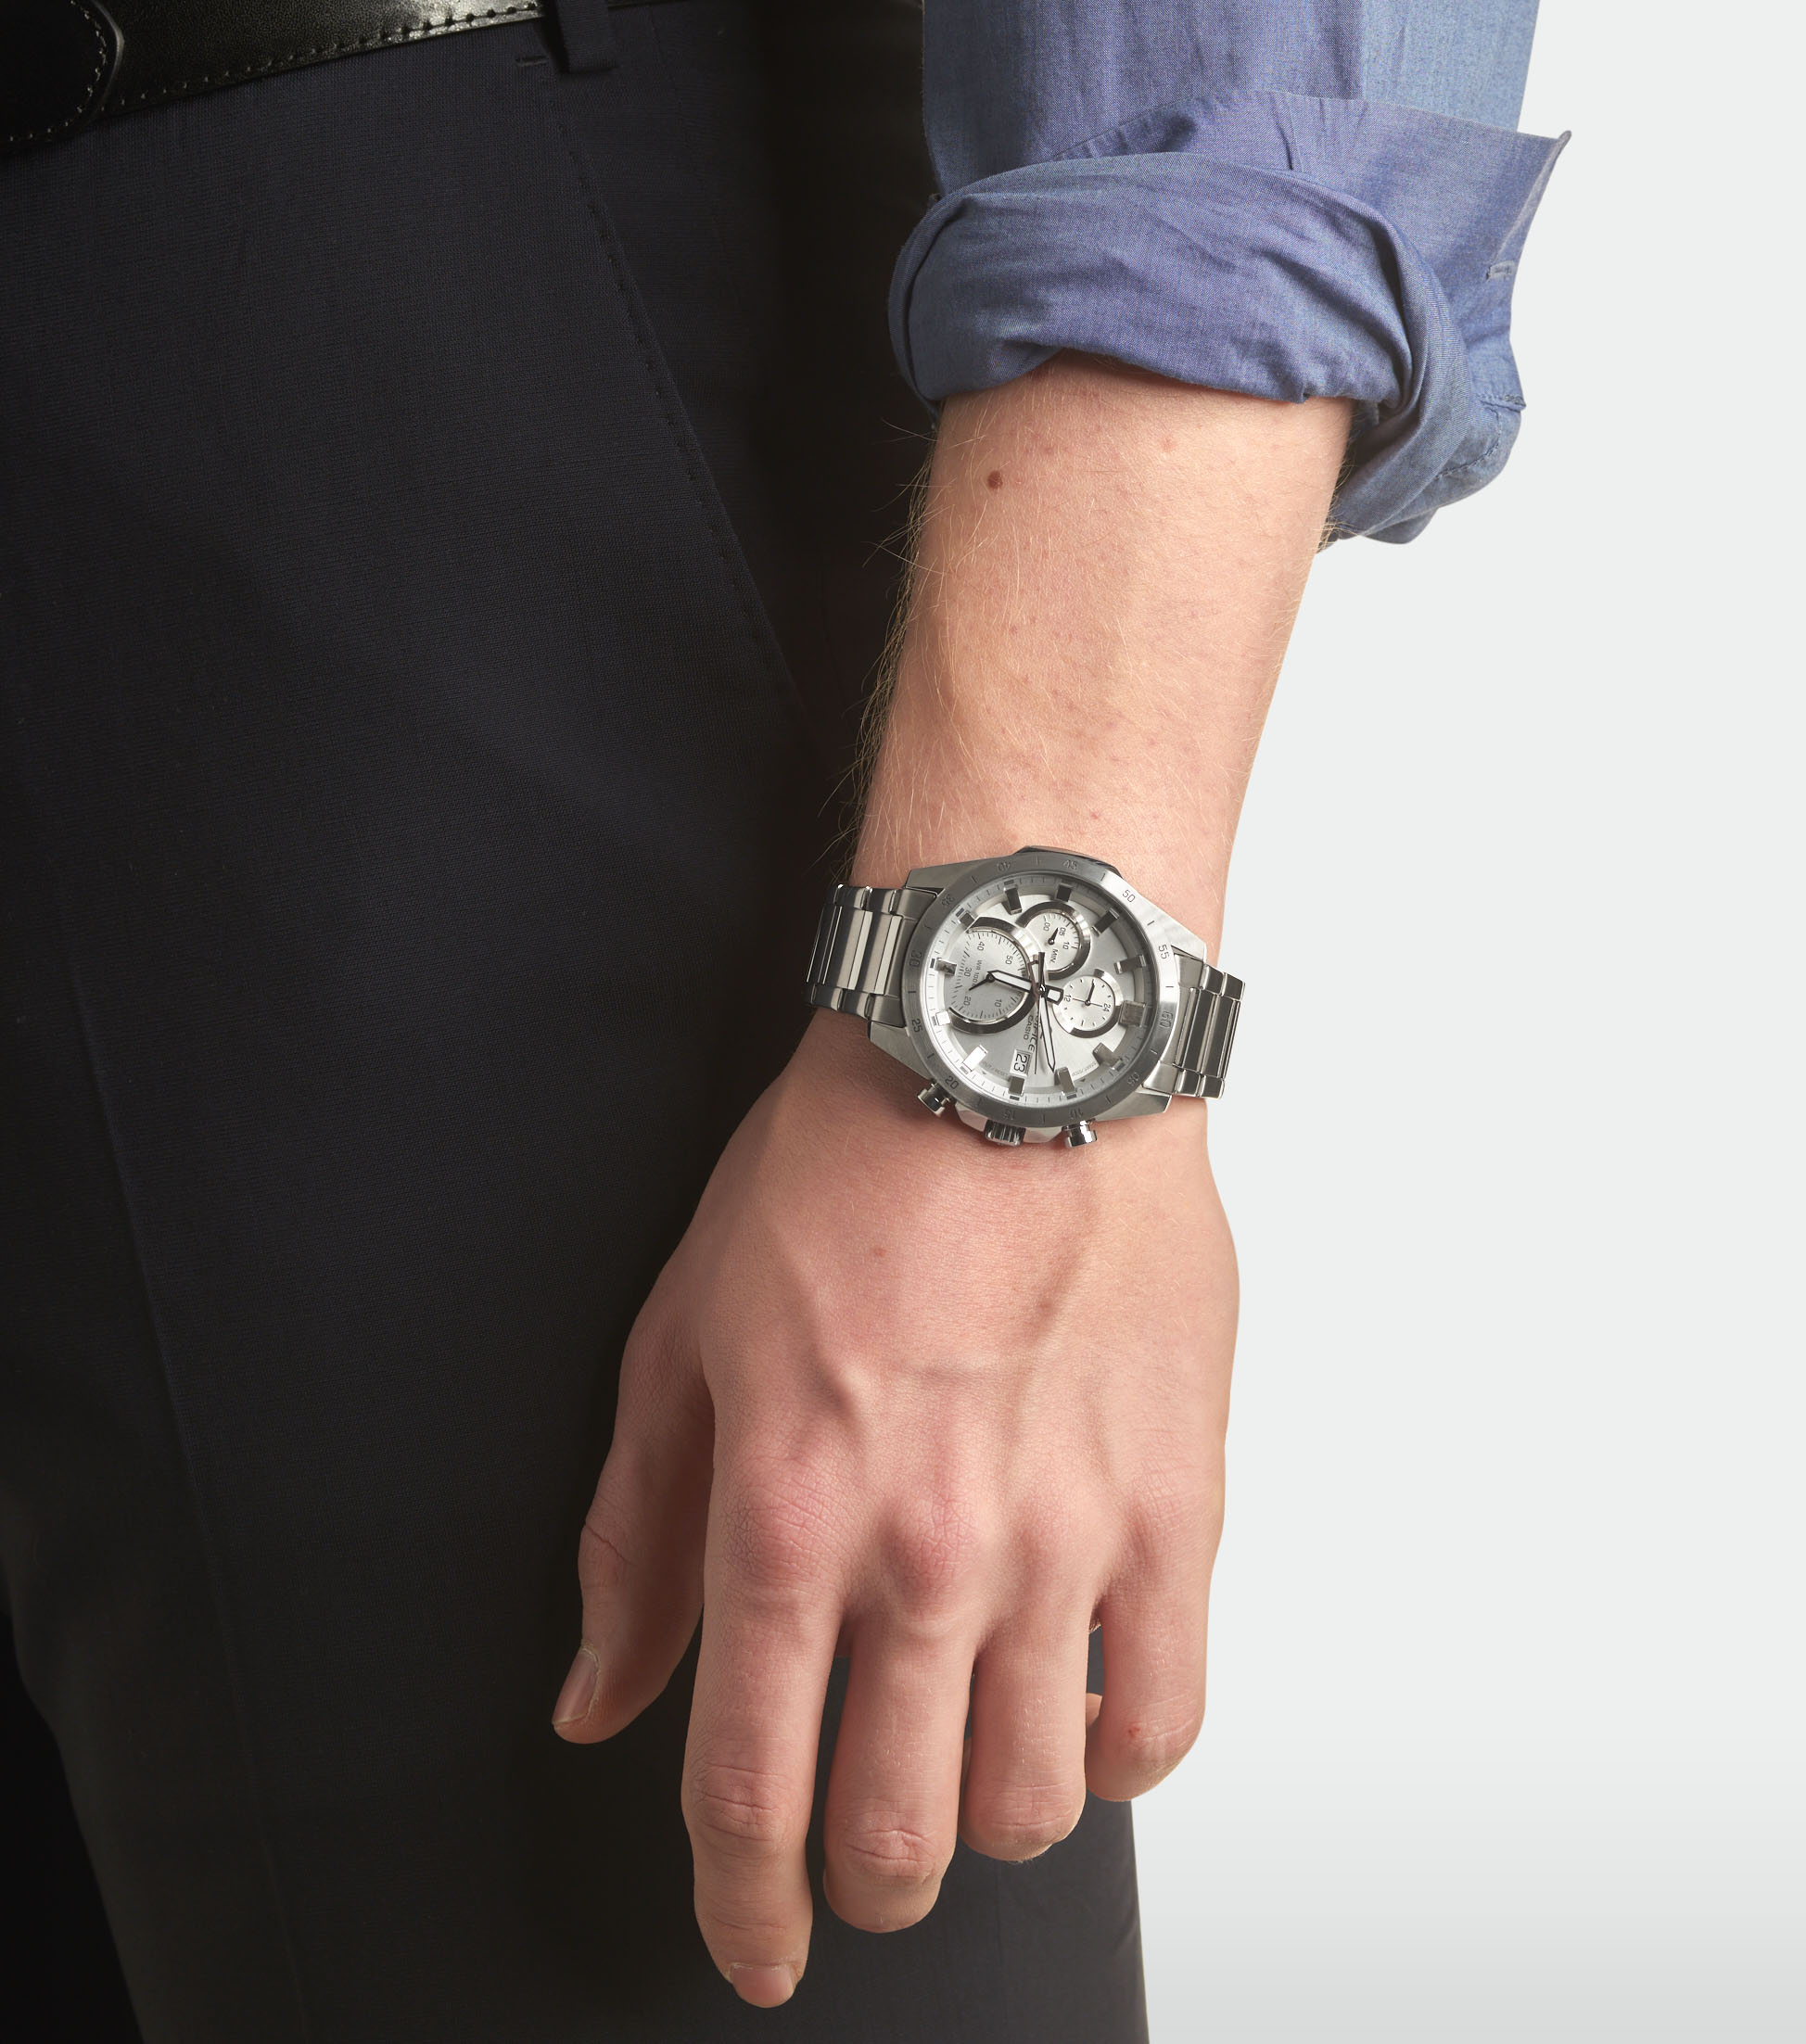 Nowe modele w kolekcji zegarków Edifice – EFR-571